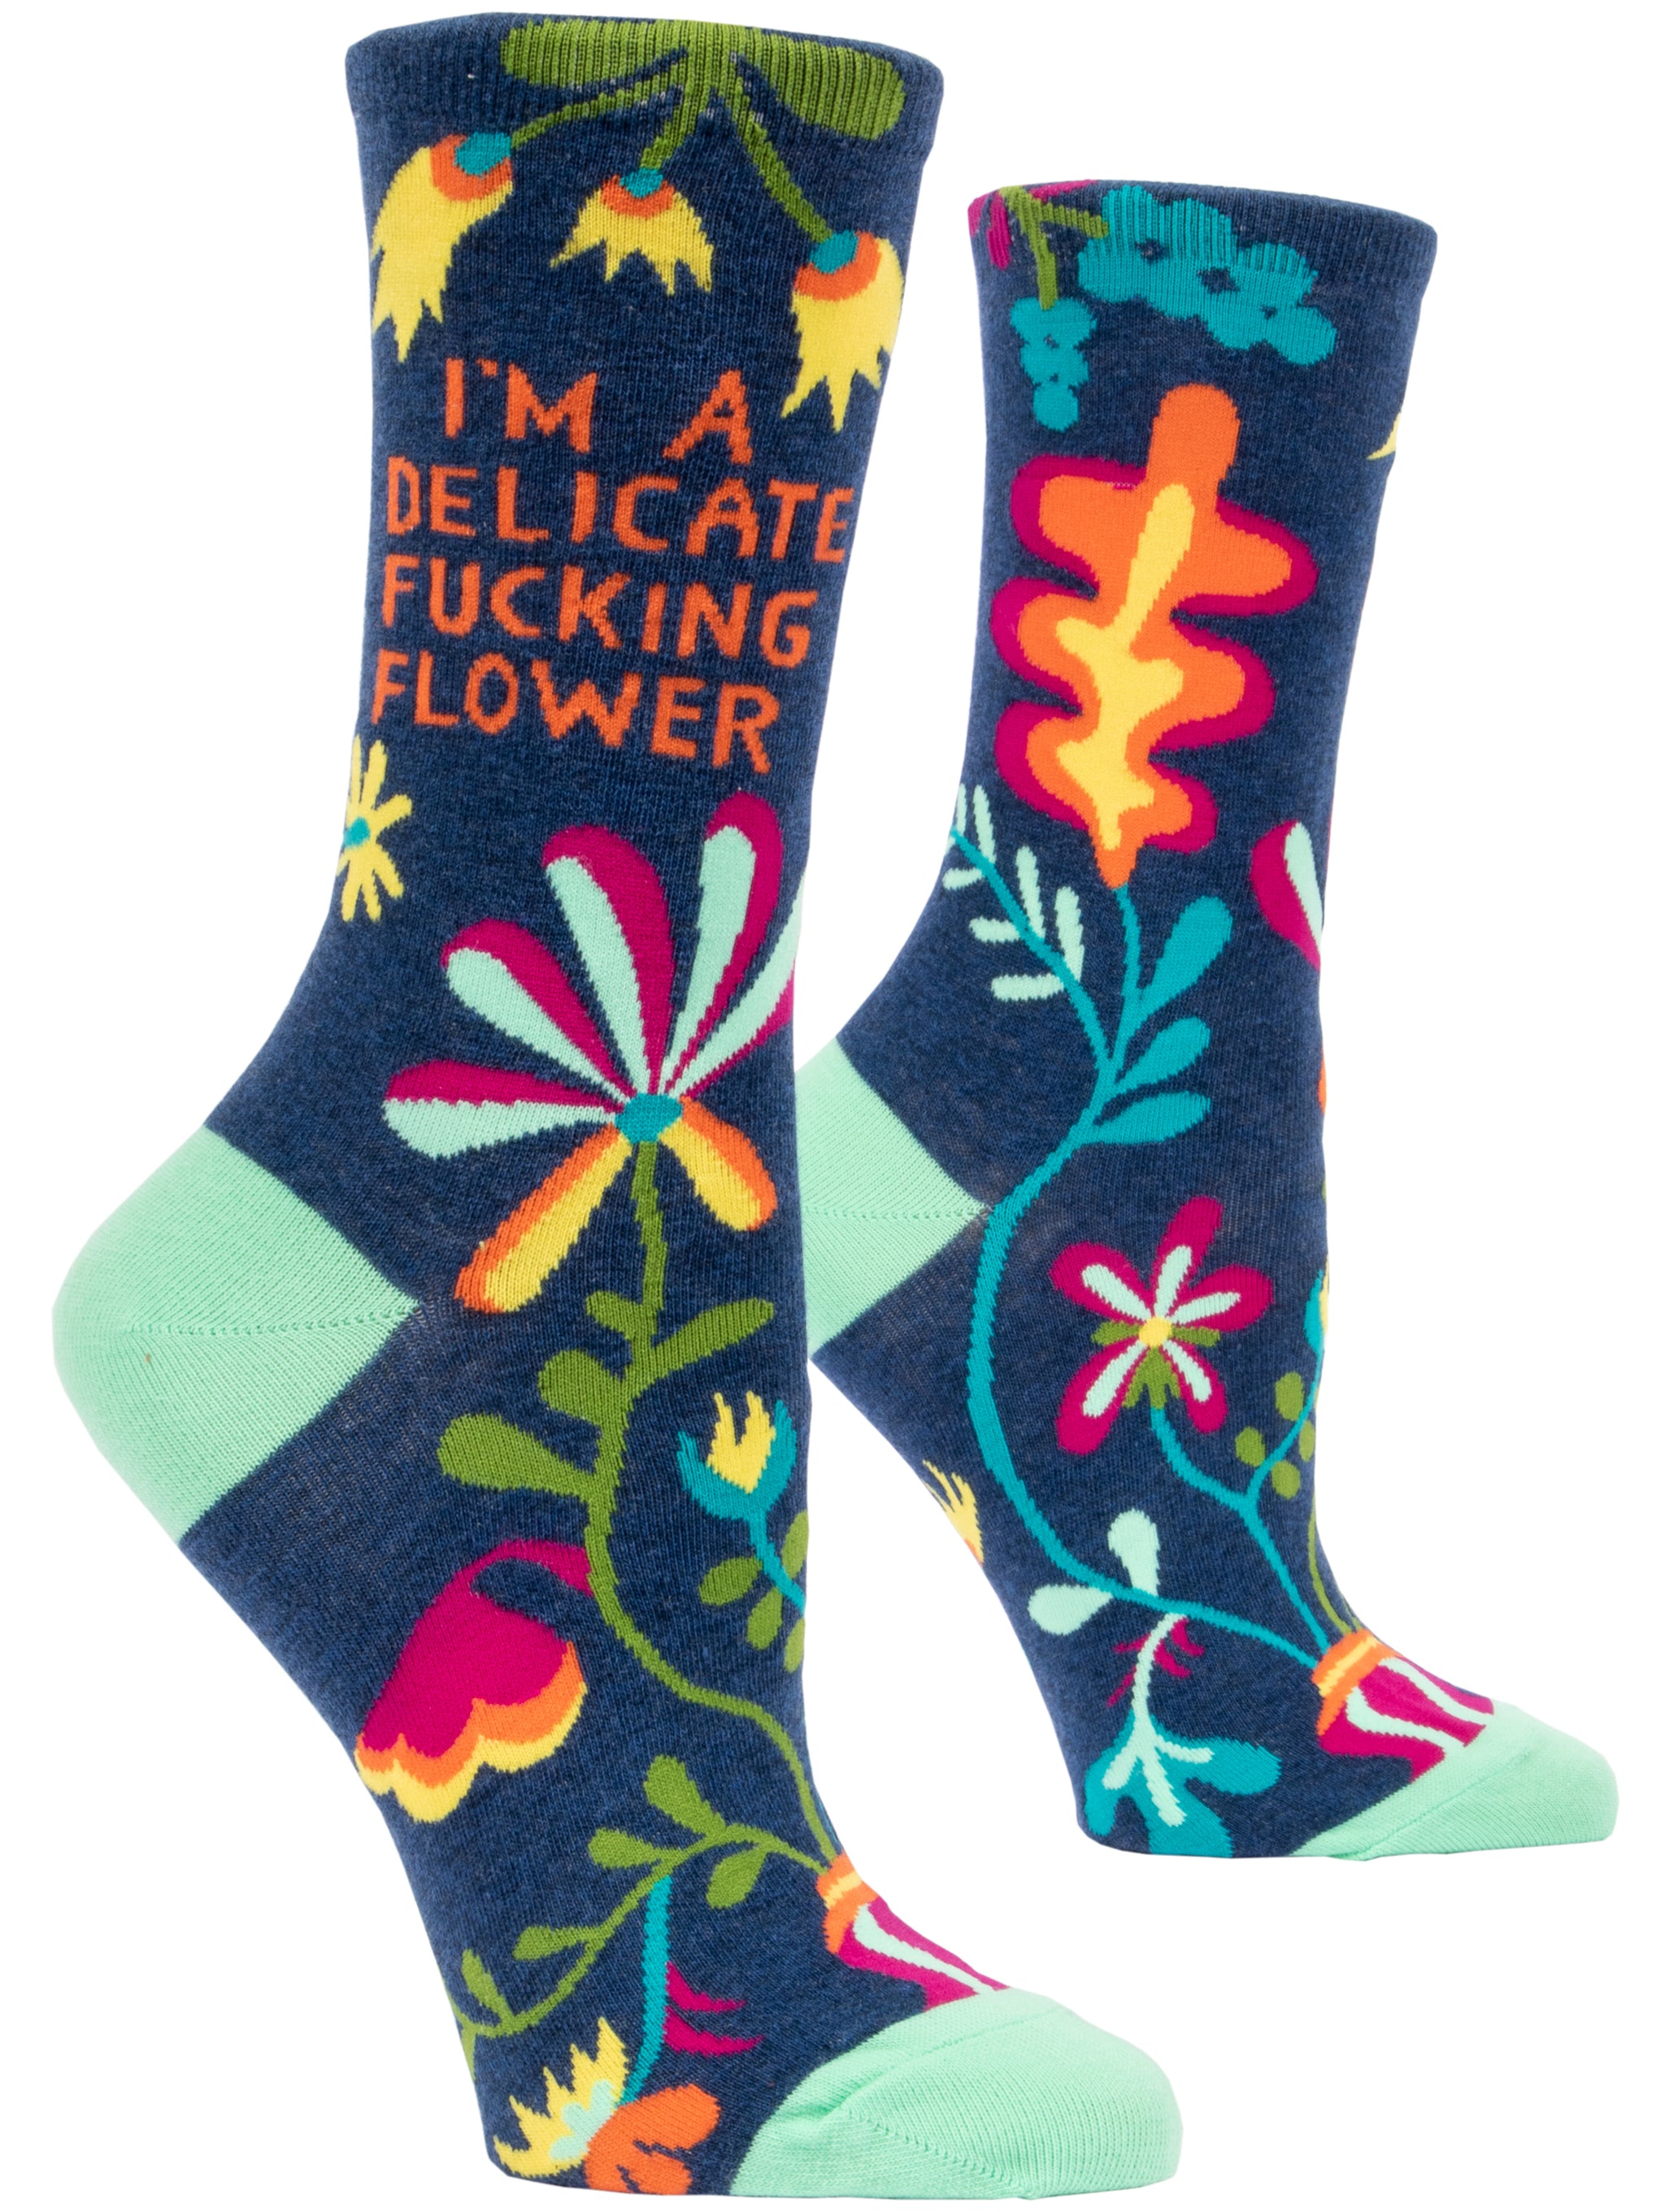 Delicate Fucking Flower Socks - Penny Black